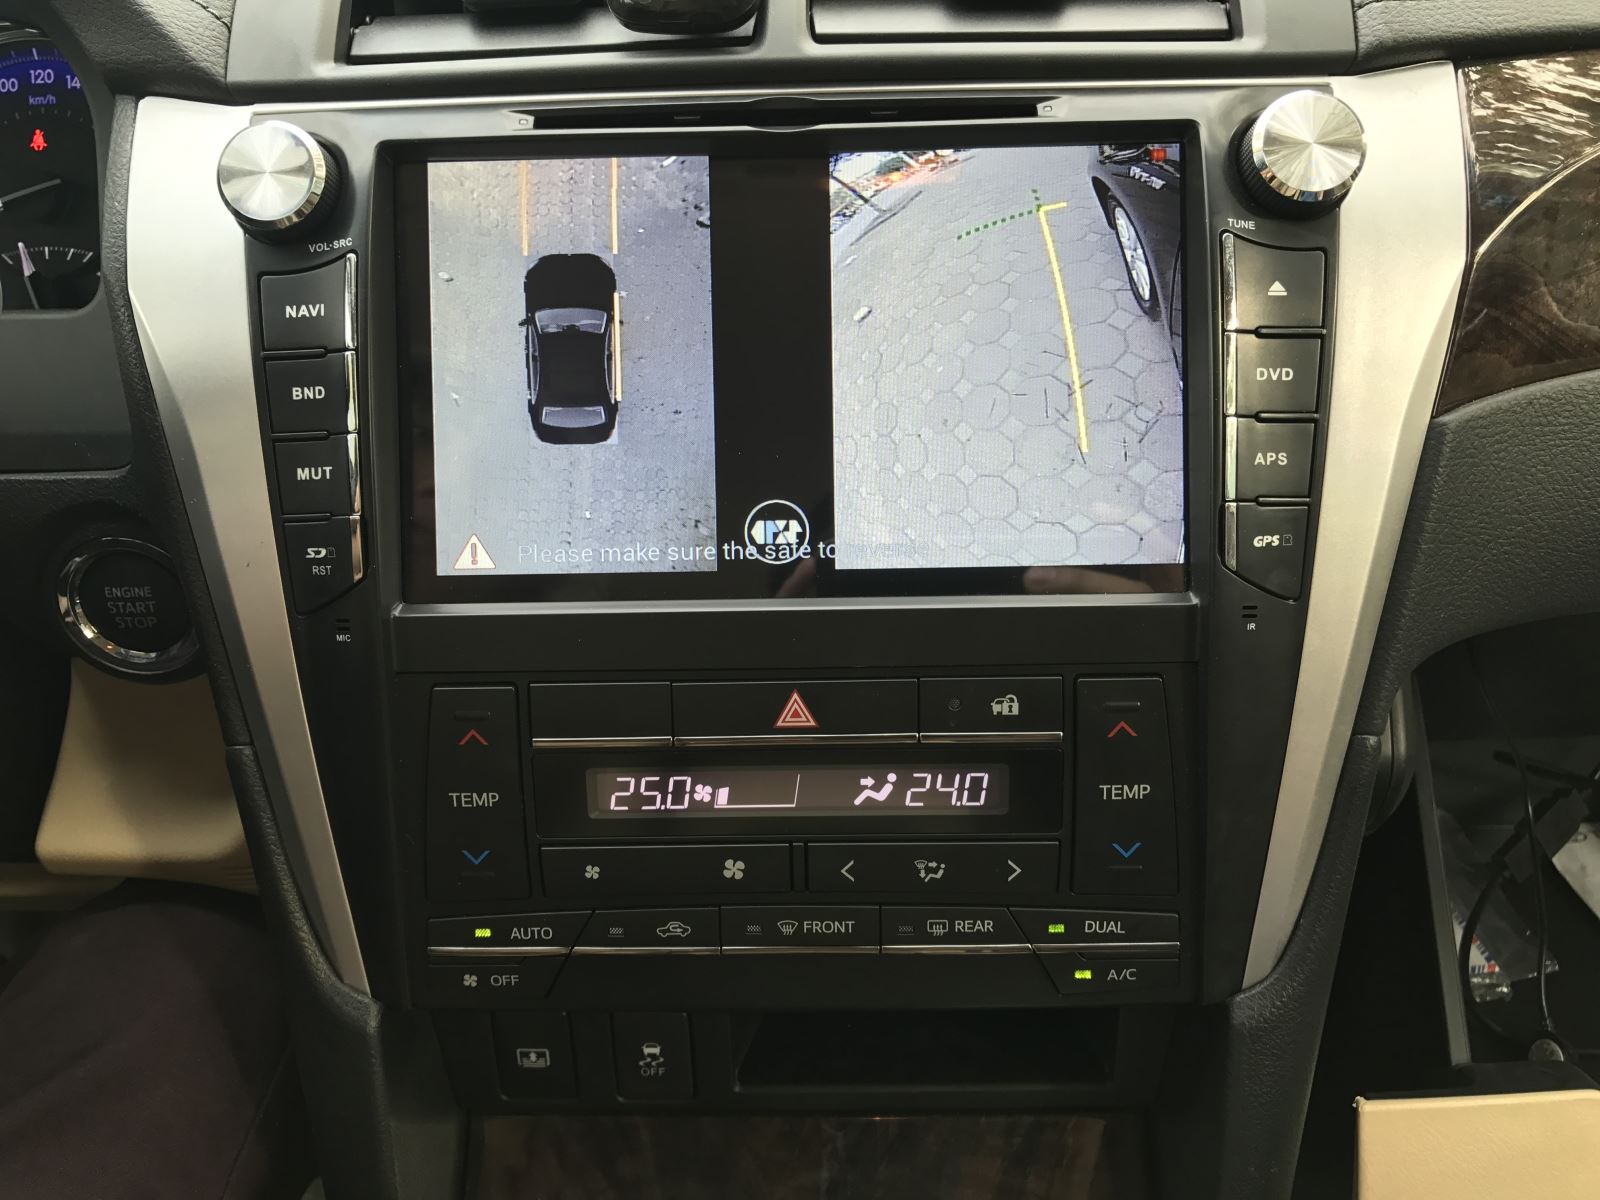 Camera 360 độ Oris cho xe Toyota Camry 2015- 2017 - 3